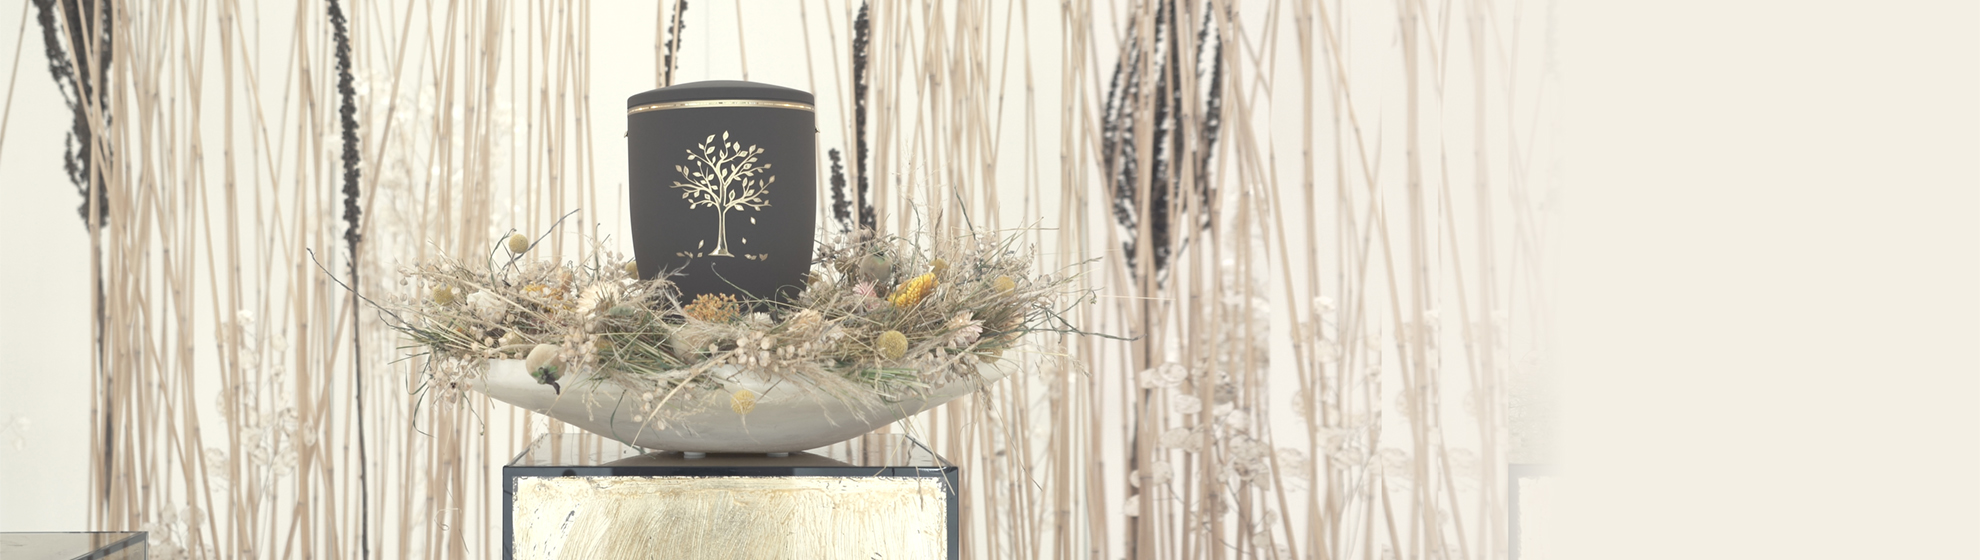 graue Urne steht in einer Schale mit Trockenblumen dekoriert